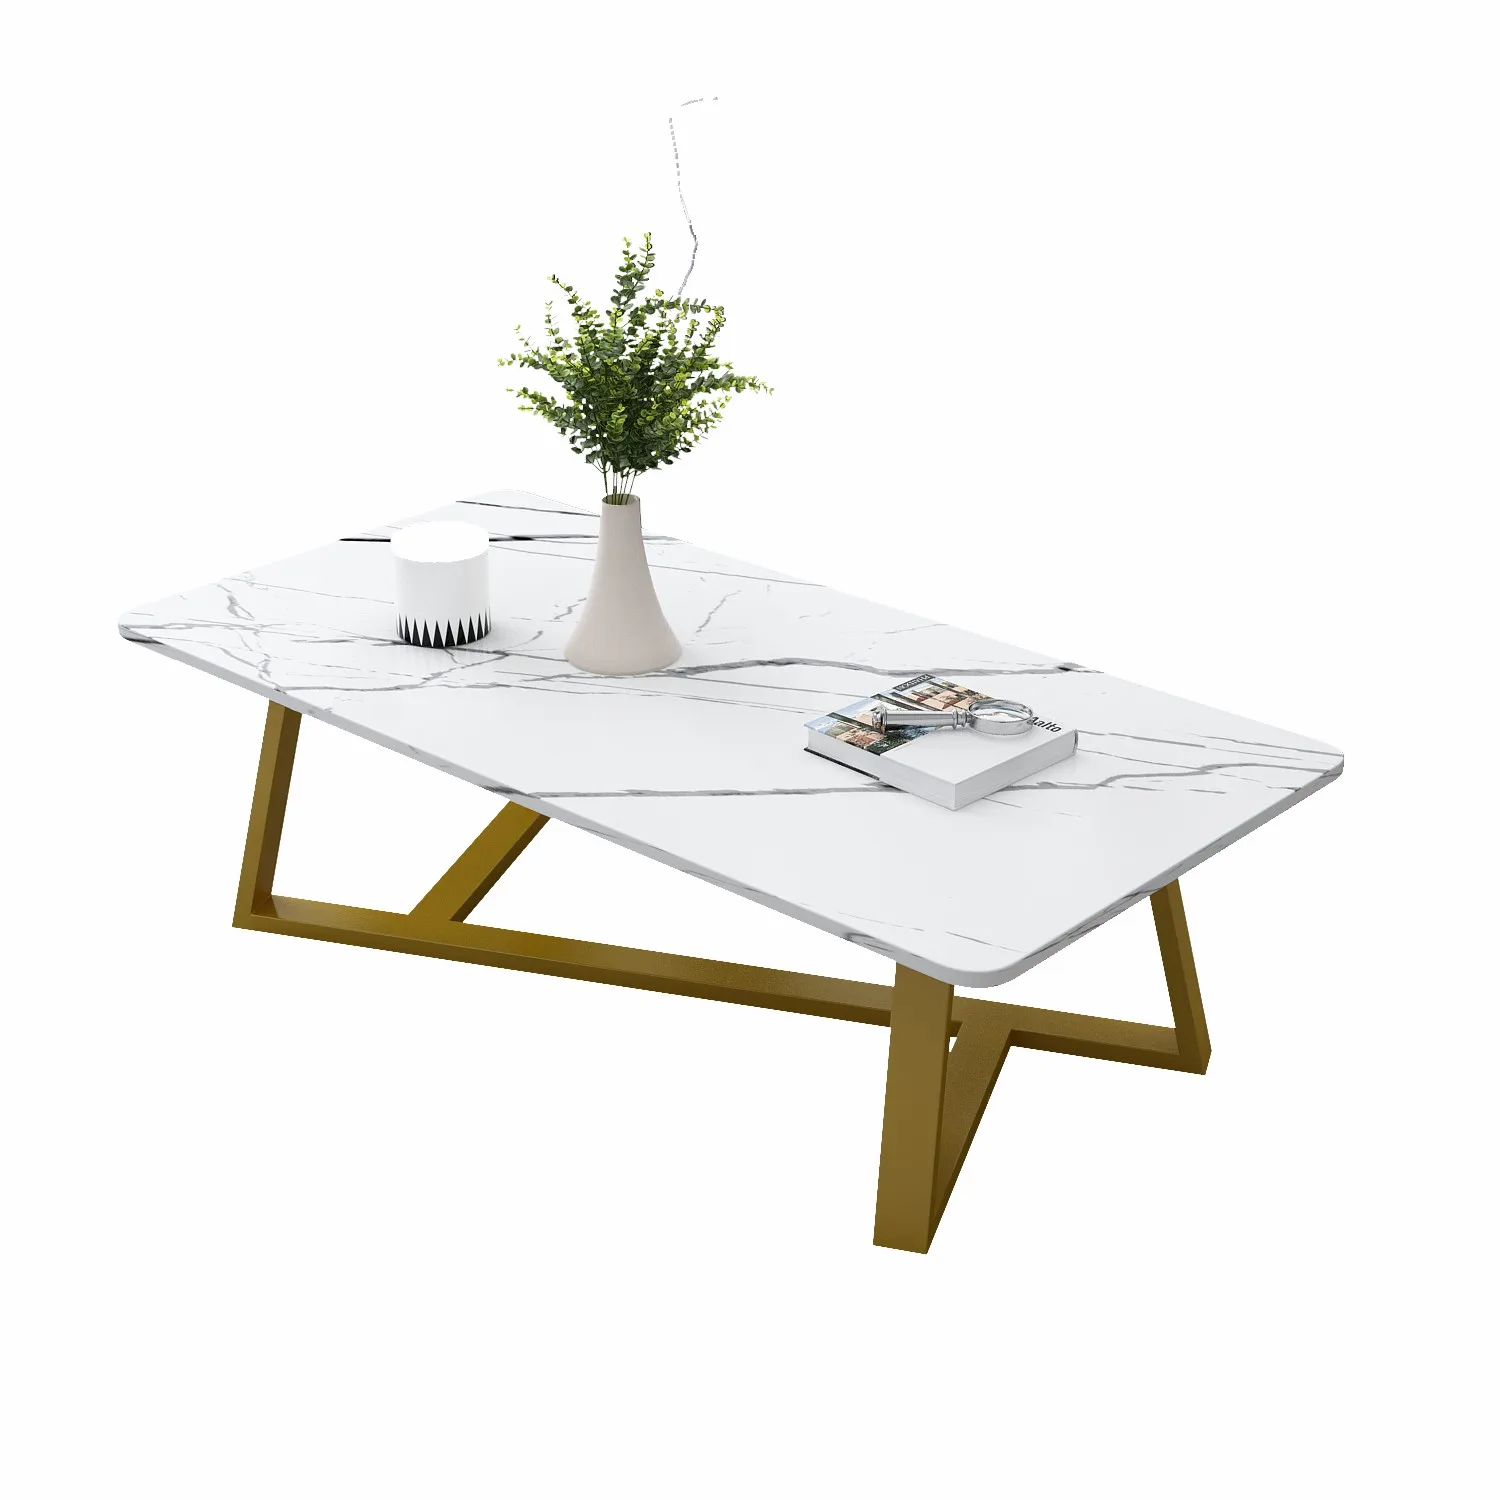 Дизайн гостиной и столовой Журнальные столики Белая Тумбочка Металлический Узкий обеденный стол Набор уличной мебели Nordic Meubles0